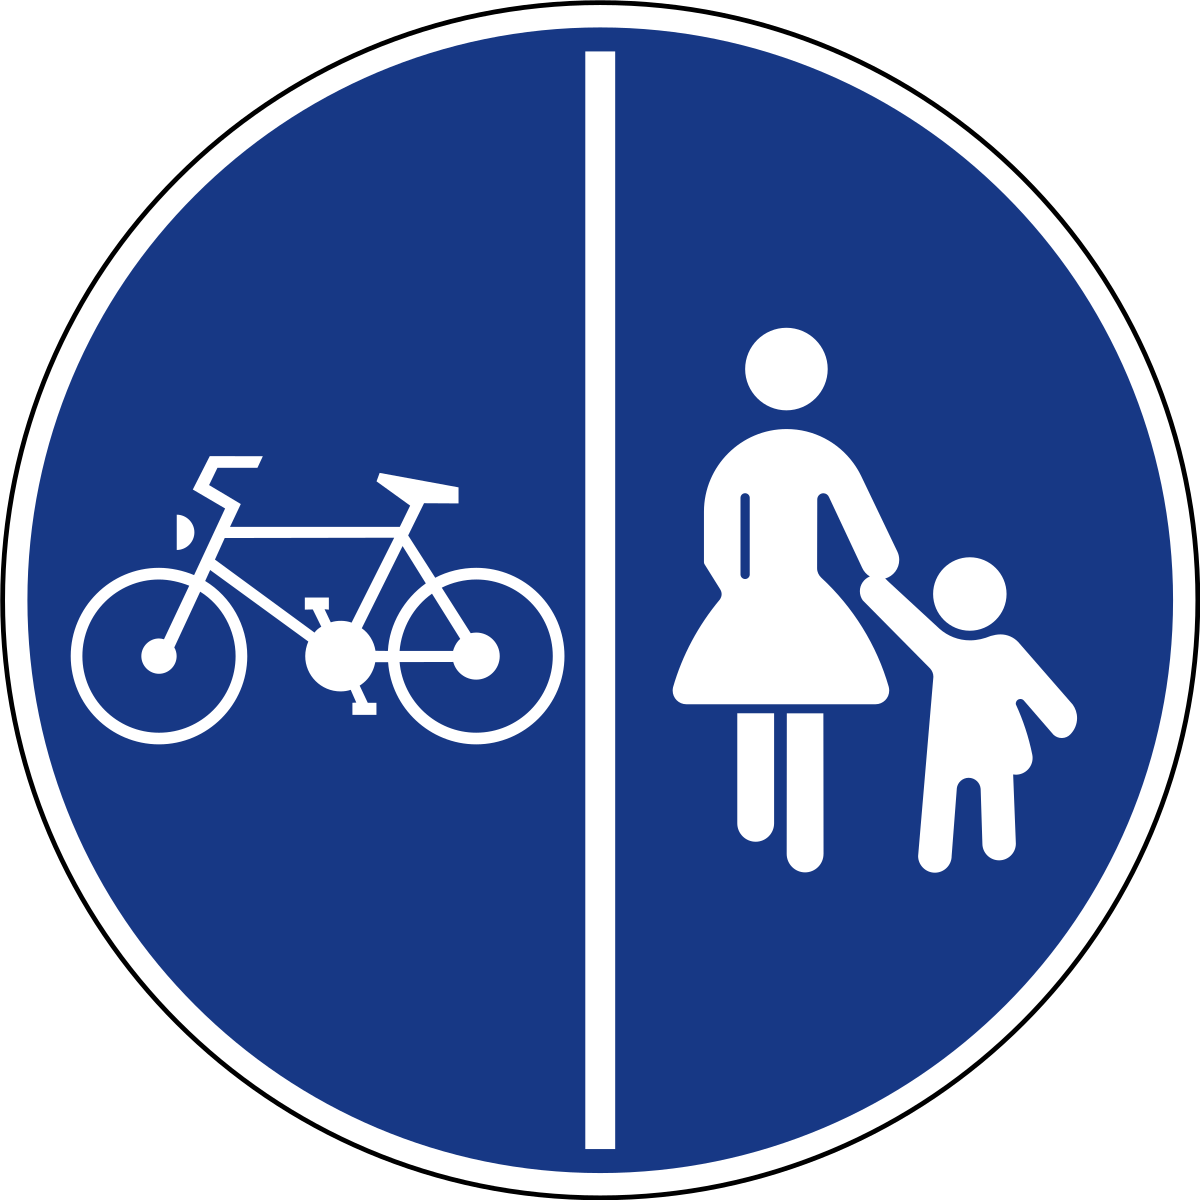 Ребенок велосипедная дорожка. Знак 4.4.1 велосипедная дорожка. Велосипедная дорожка дорожный знак. Знак велосипедная дорожка на белом фоне. Дорожные знаки для детей в картинках.